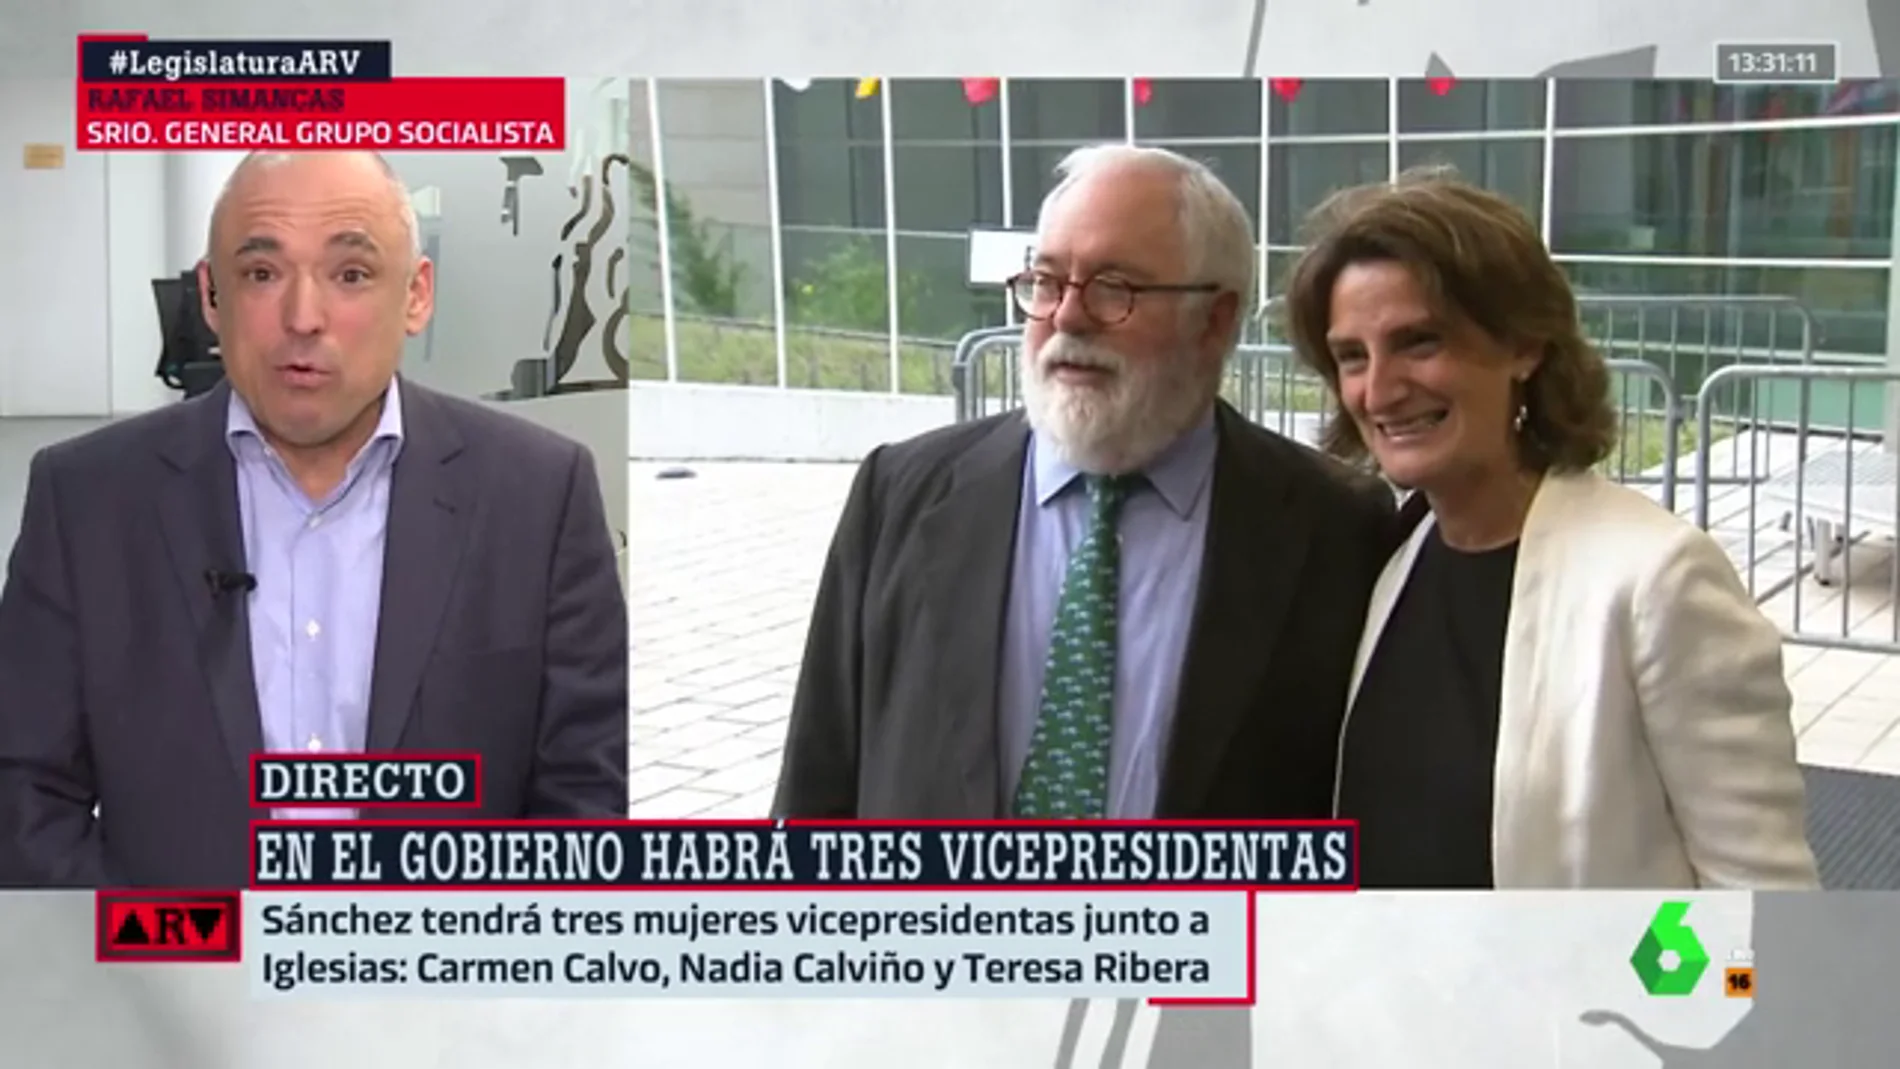 Rafael Simnacas defiende la vicepresidencia de Teresa Ribera "para uno de los grandes retos del país"